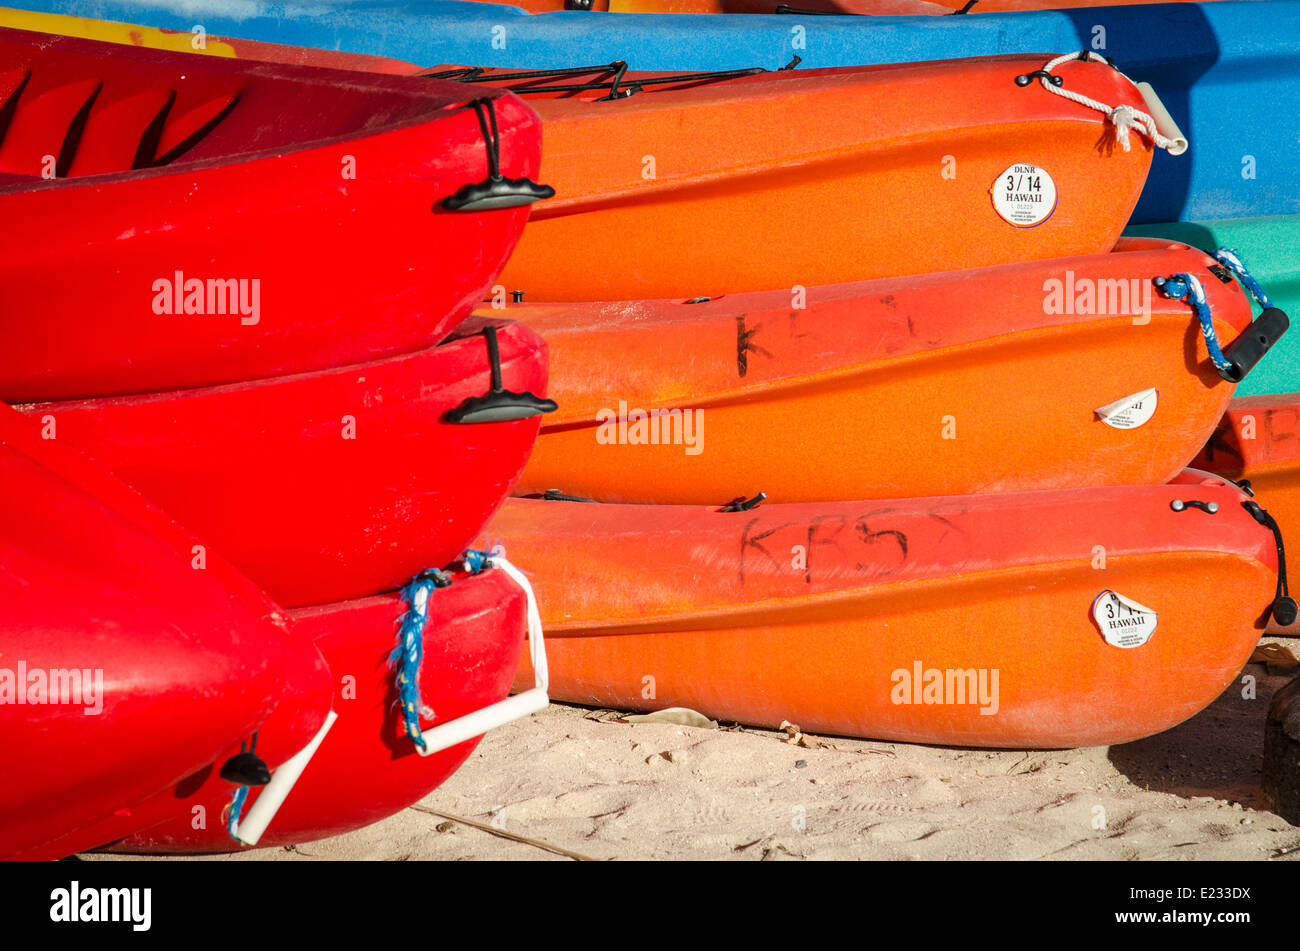 Pour louer des kayaks de mer sur la plage de Waikiki, Hawaii Banque D'Images